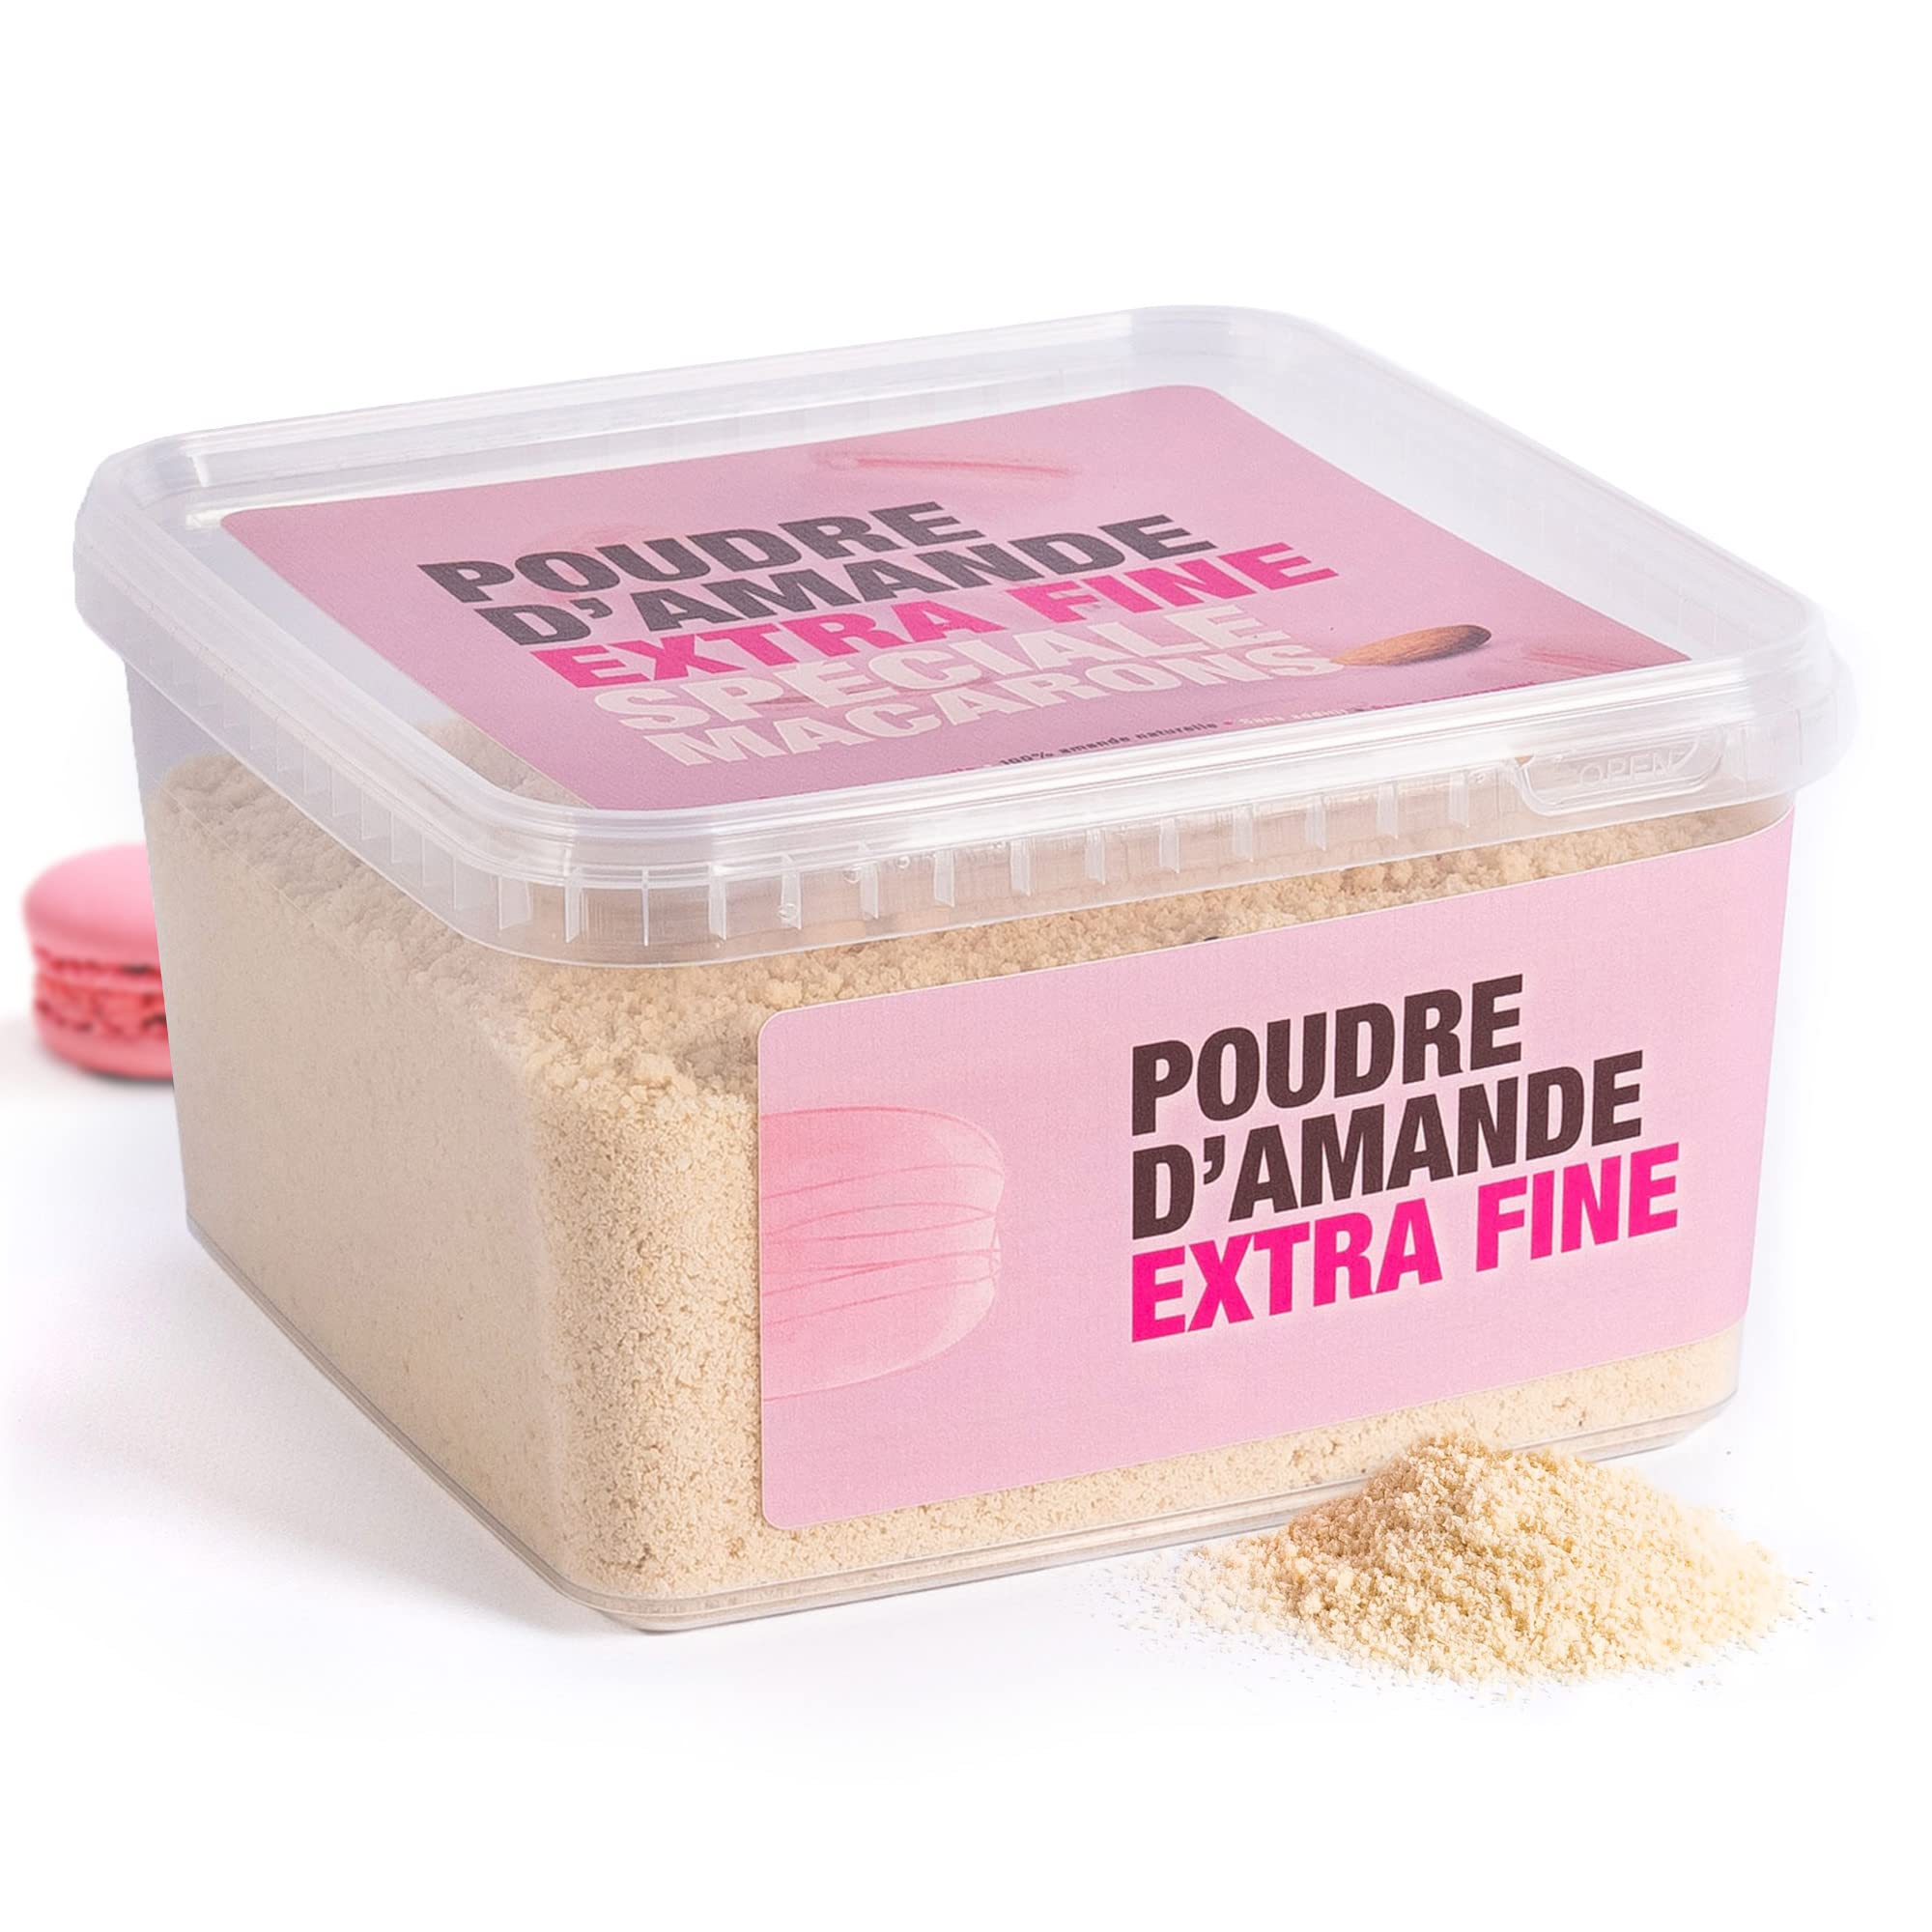 grand choix Poudre d´amande extra-fine spéciale macarons (1kg) - Farine d´amande blanche 100% naturelle, sans conservateur et sans additifs - Emballage pratique en boîte hermétique M670DMiRG pas cher